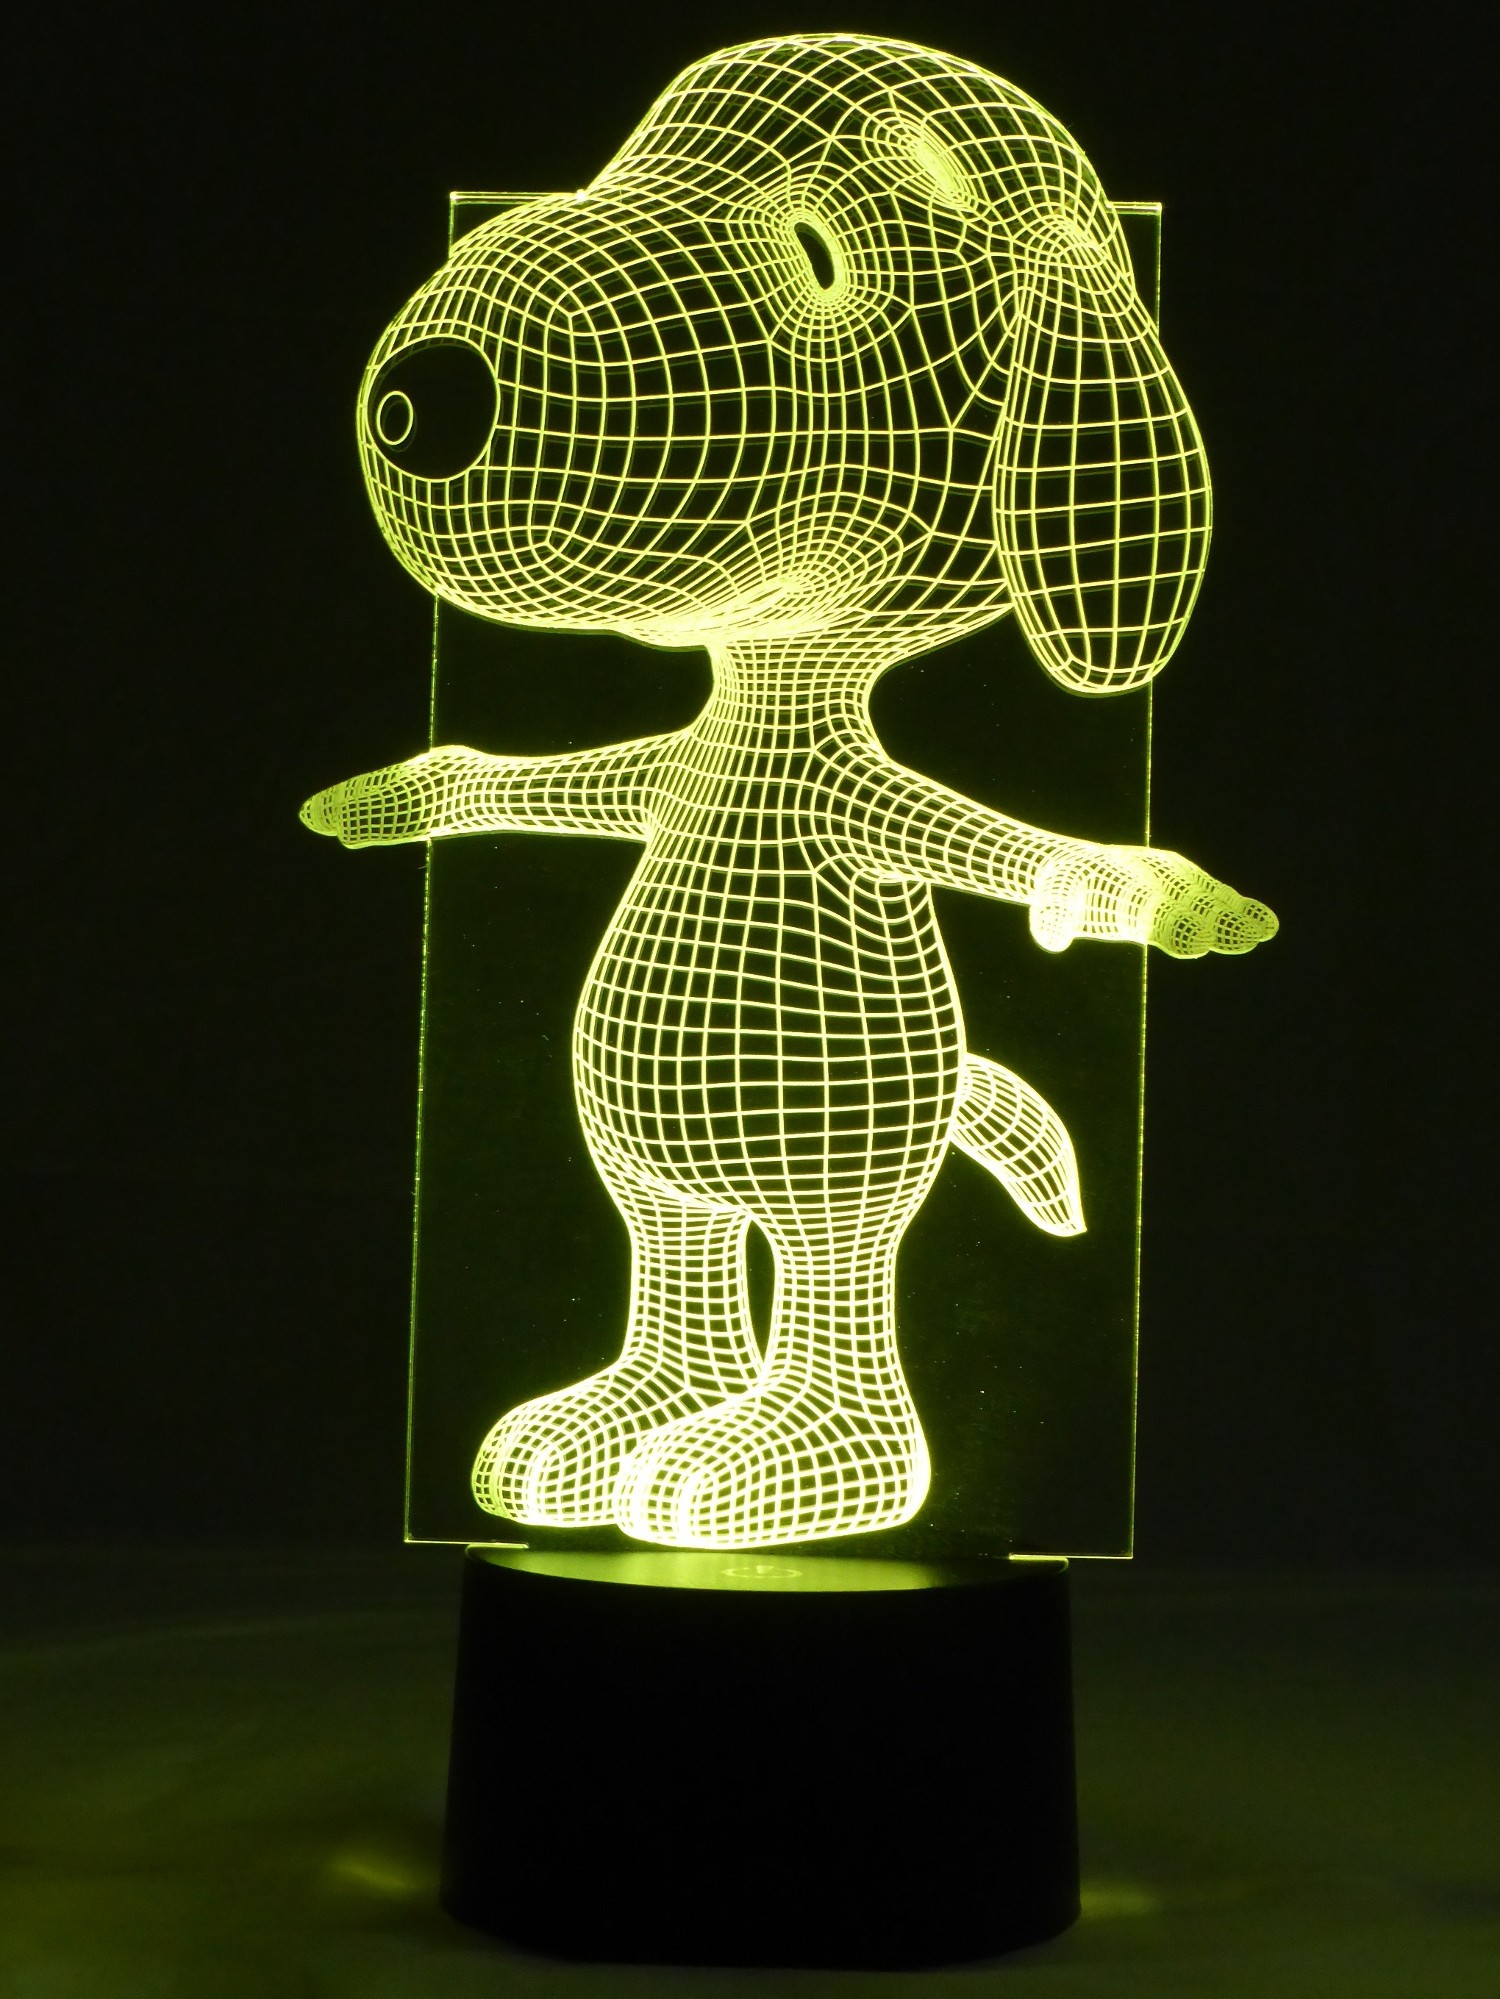 originelle 3D LED-Lampe Ernie und Bert Mehrfarben Tischlampe Kinderzimmerlampe